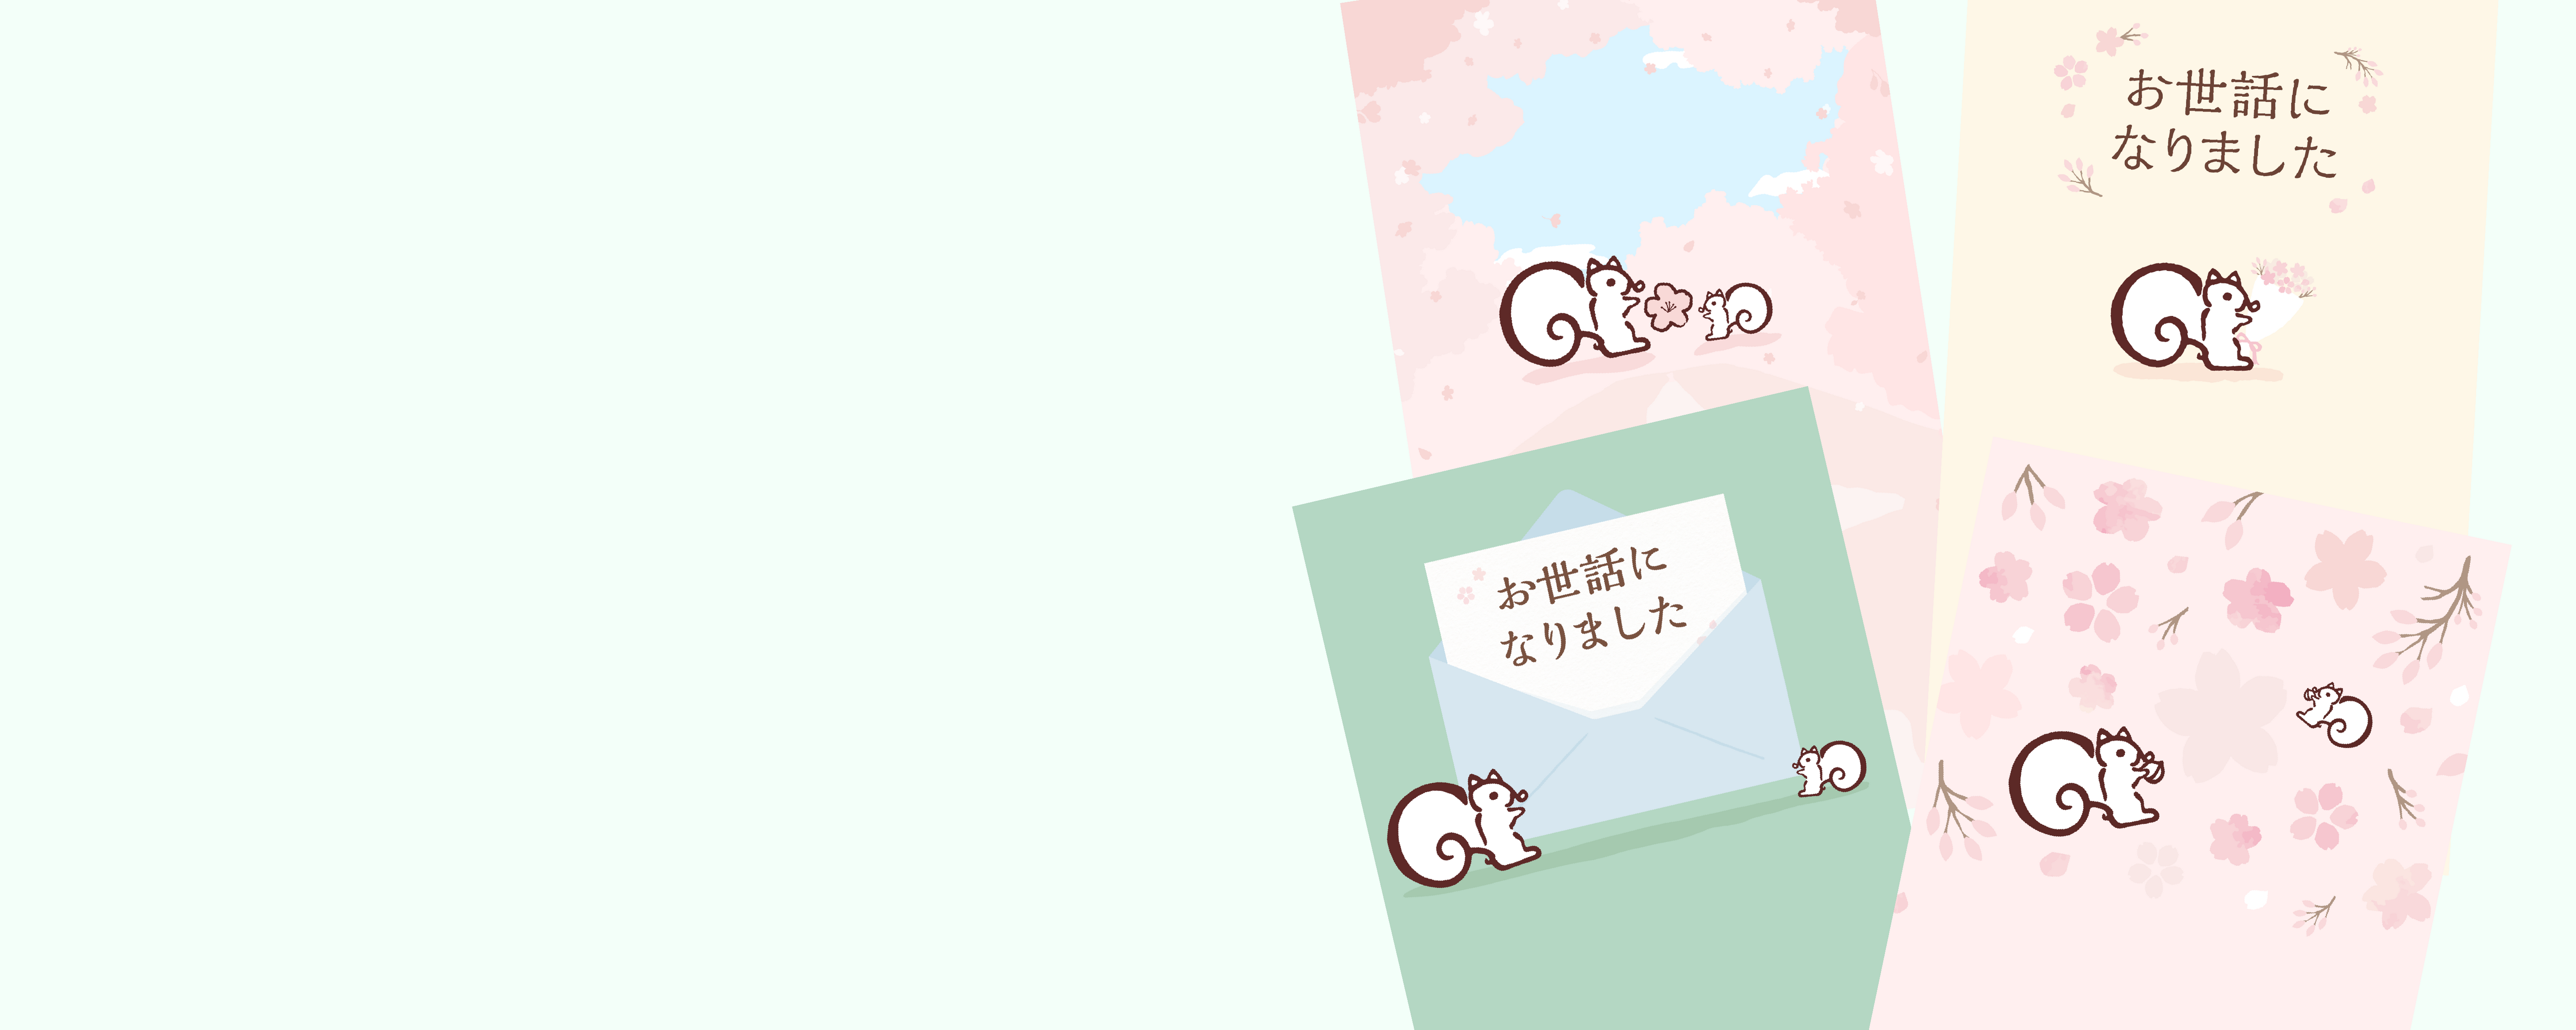 鎌倉紅谷の「eギフト」春のデジタルカード